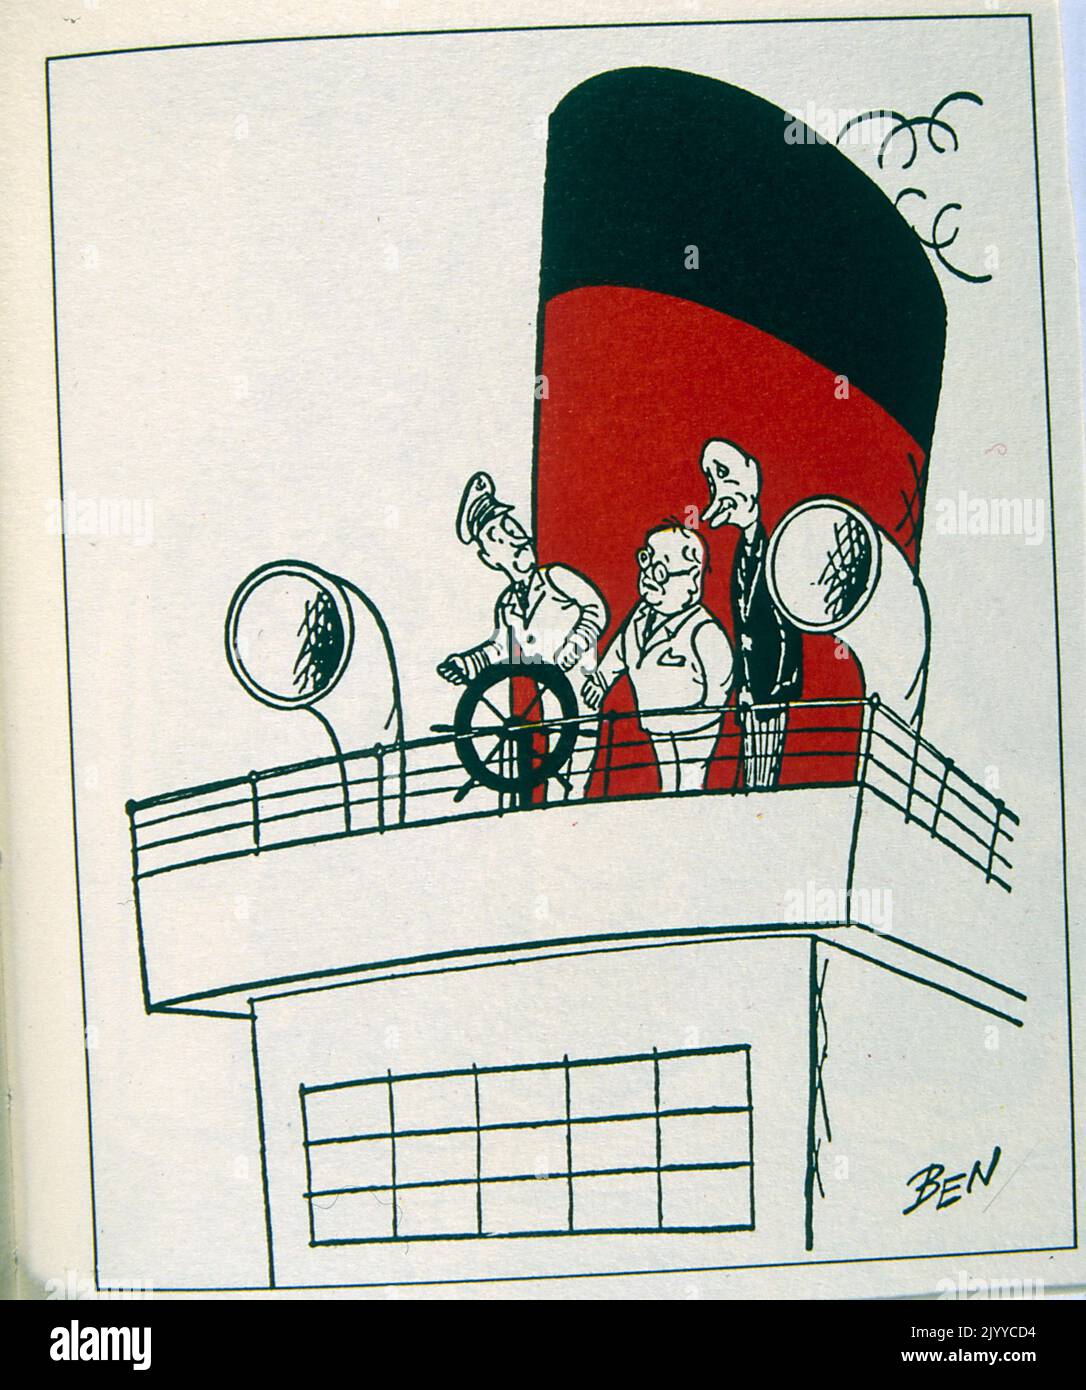 Illustrazione raffigurante tre uomini davanti al timone di una nave. Firmato BEN Foto Stock